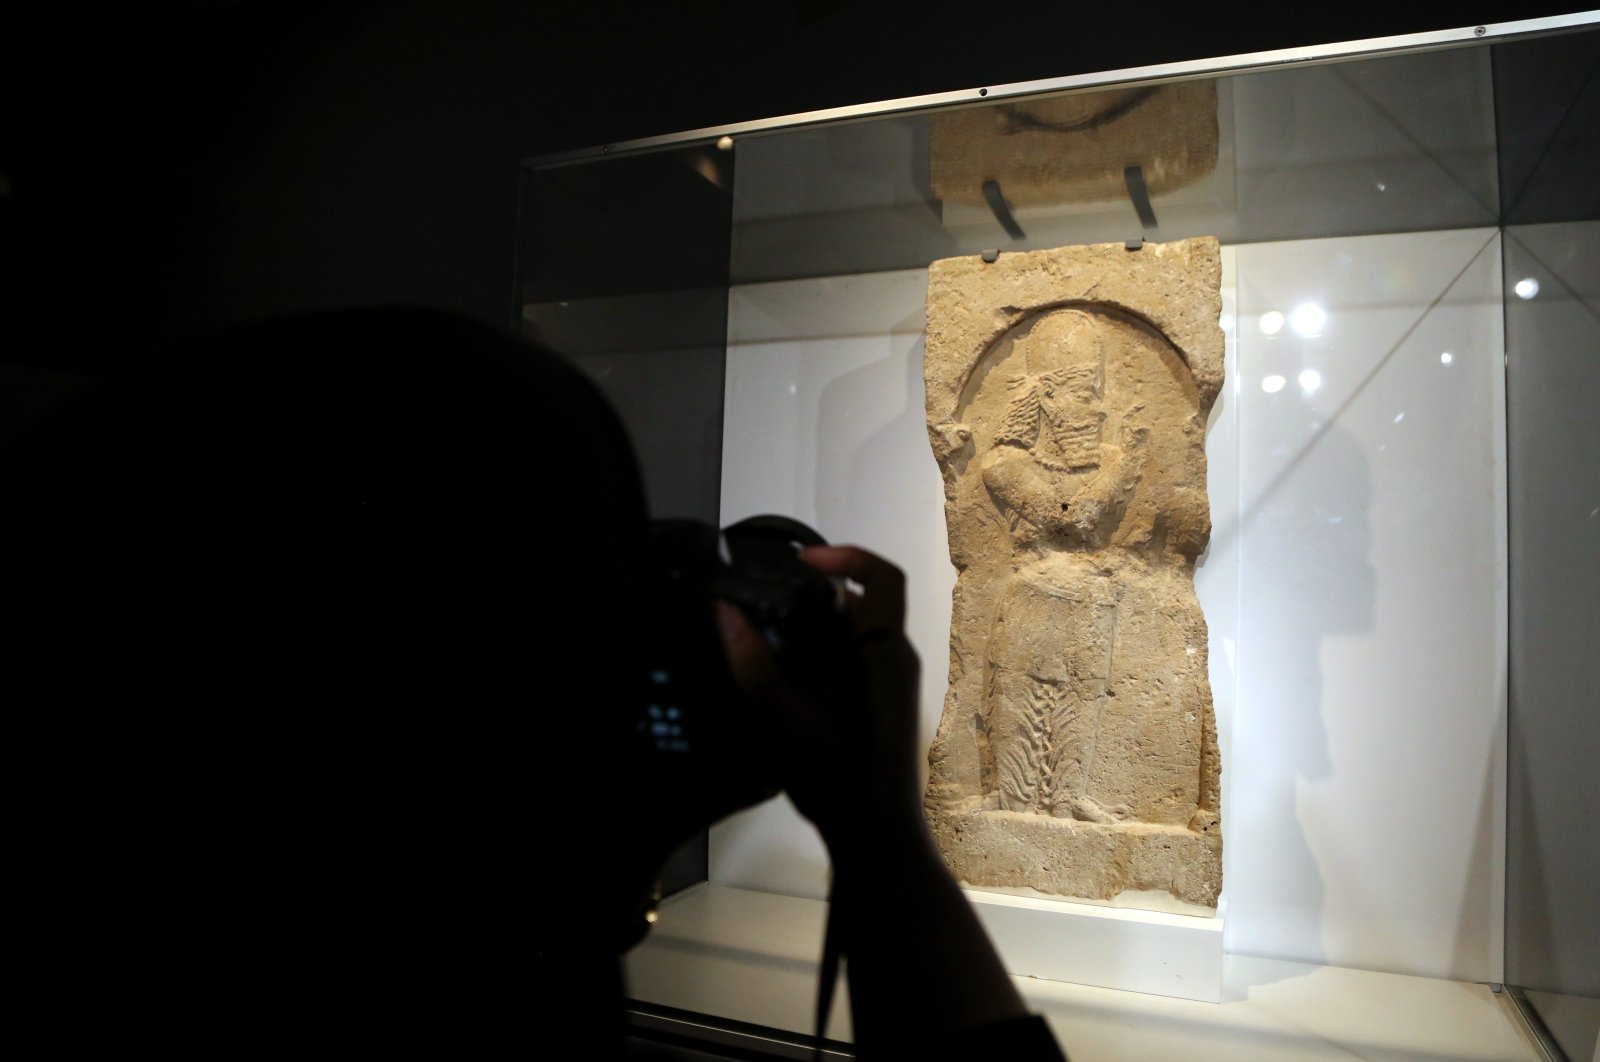 Inggris mengembalikan artefak sejarah dari era Sasania setelah 35 tahun